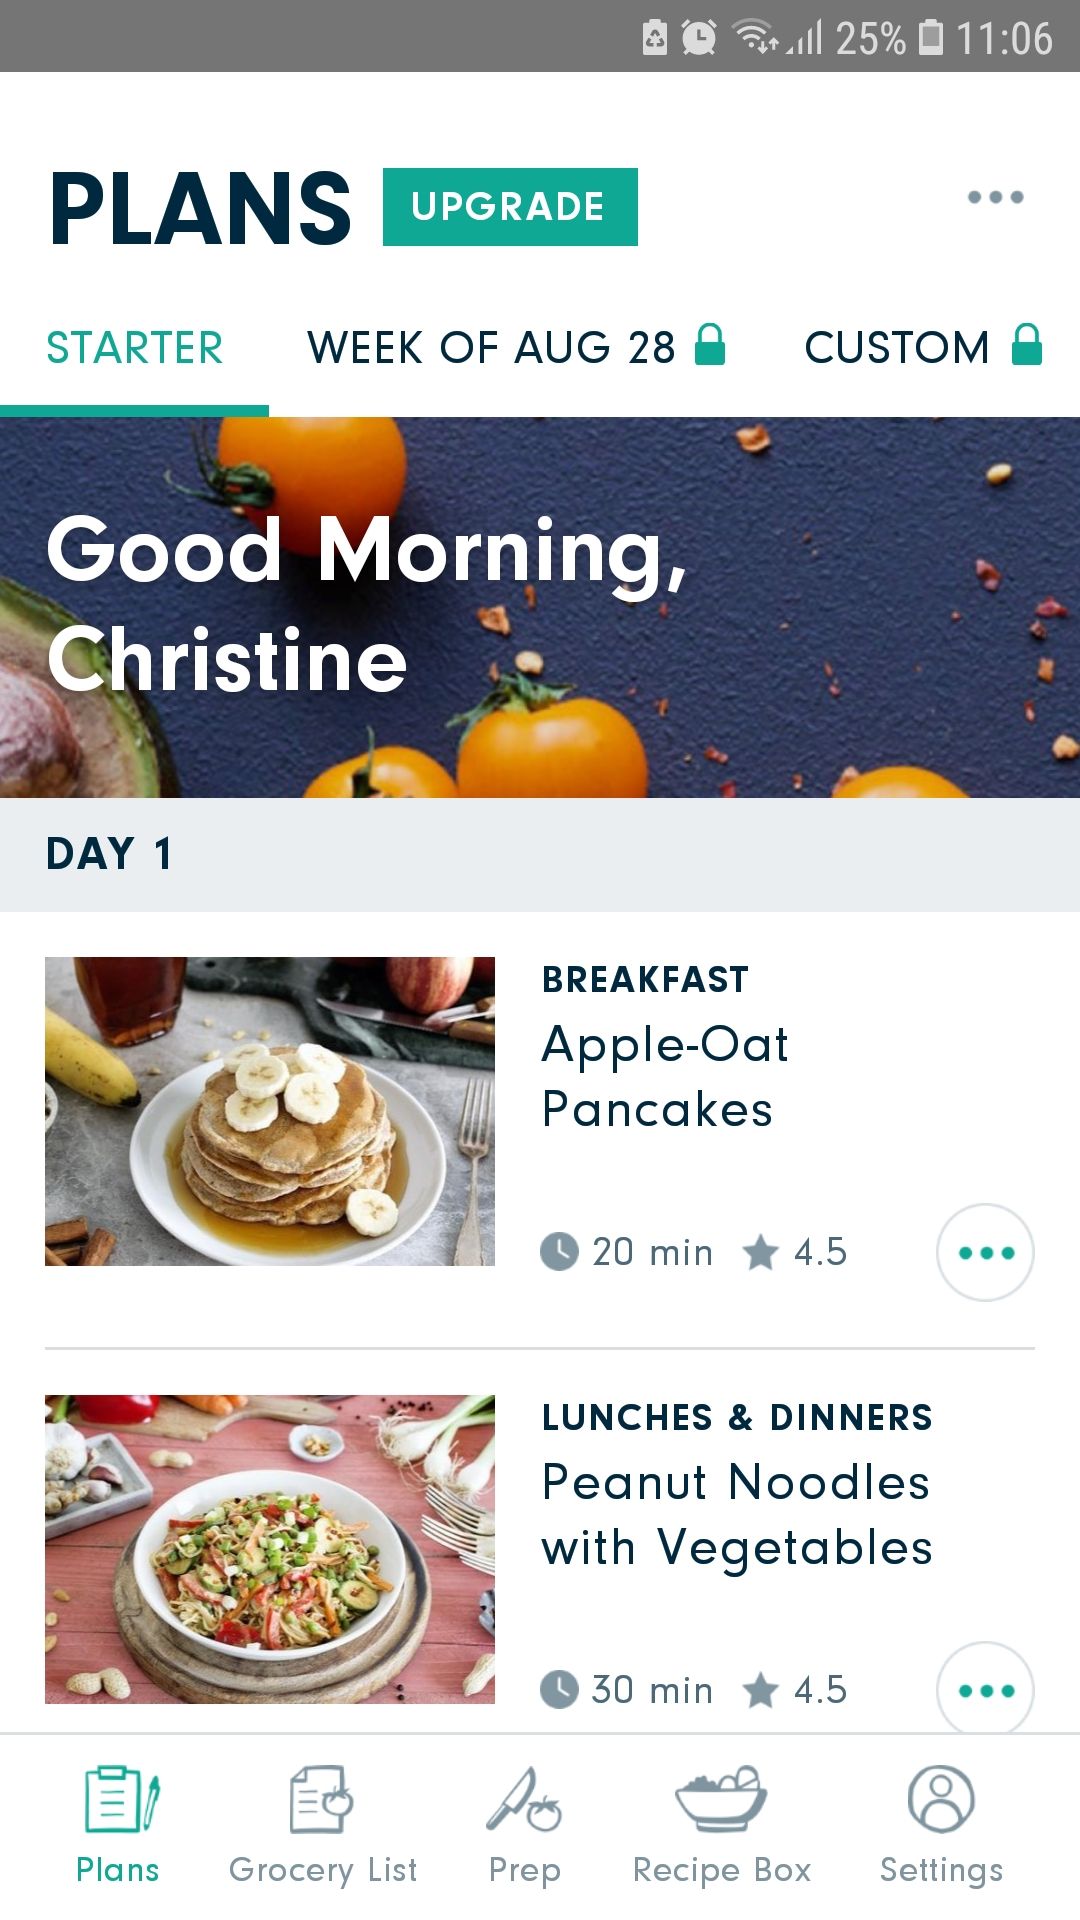 Forks Meal Planner mobile food app plans